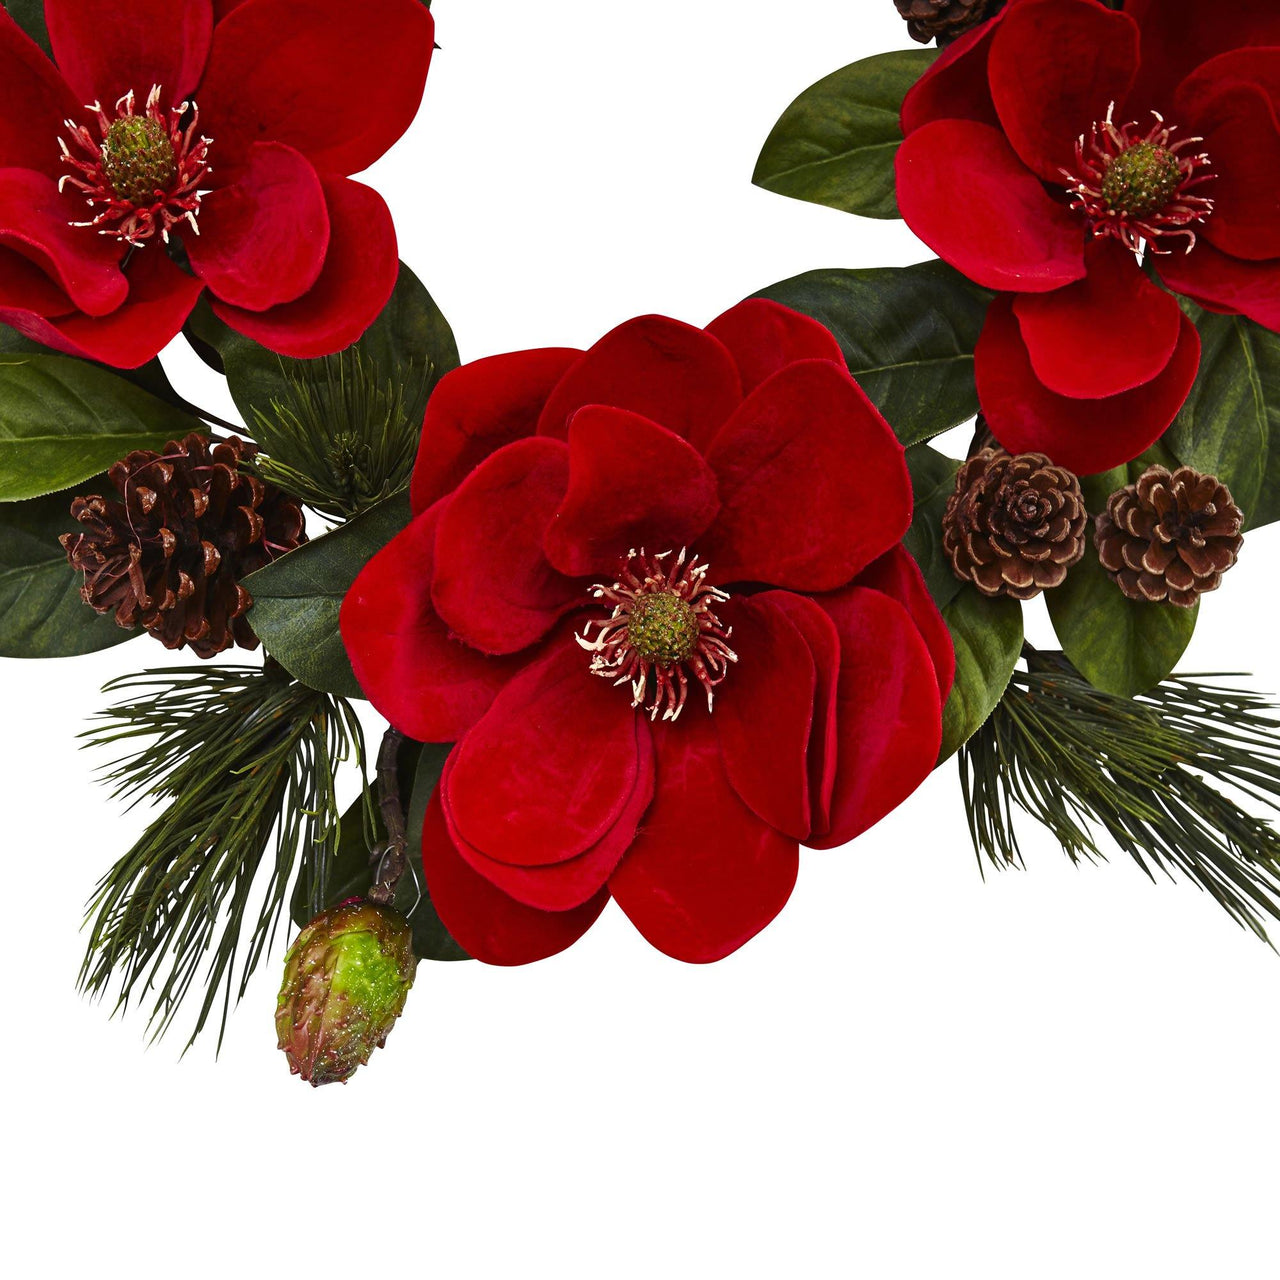 24” Red Magnolia & Pine Wreath - The Fox Decor